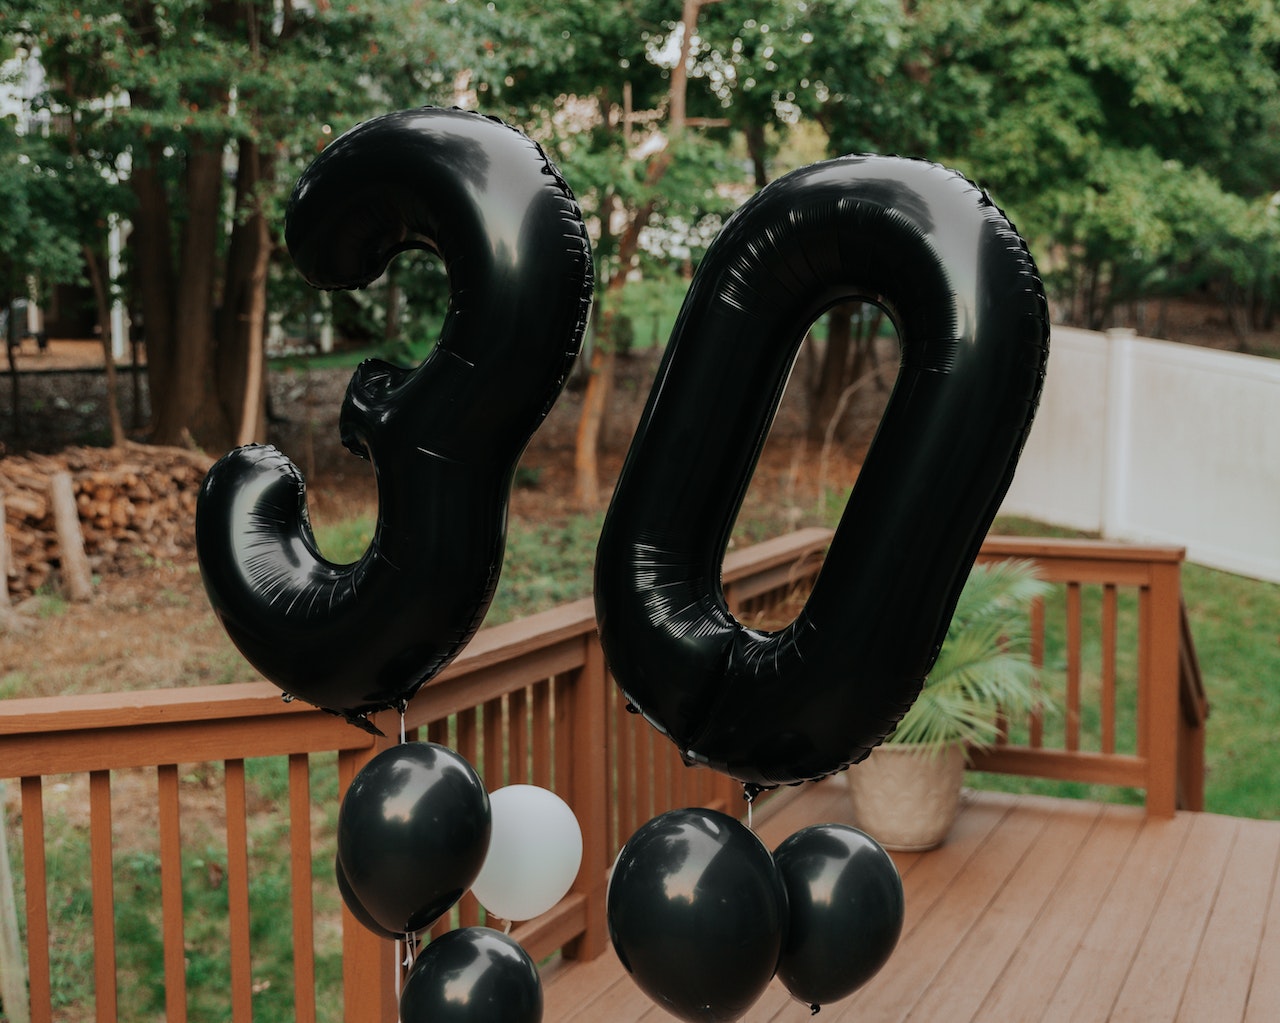 Na tym radosnym obrazku widoczne są balony z okazji 30. urodzin. Są one w różnych kształtach i kolorach, a cyfra "30" widnieje na kilku z nich, podkreślając tę wyjątkową rocznicę. Balony dodają koloru i radości do dekoracji, tworząc wspaniałą atmosferę świętowania